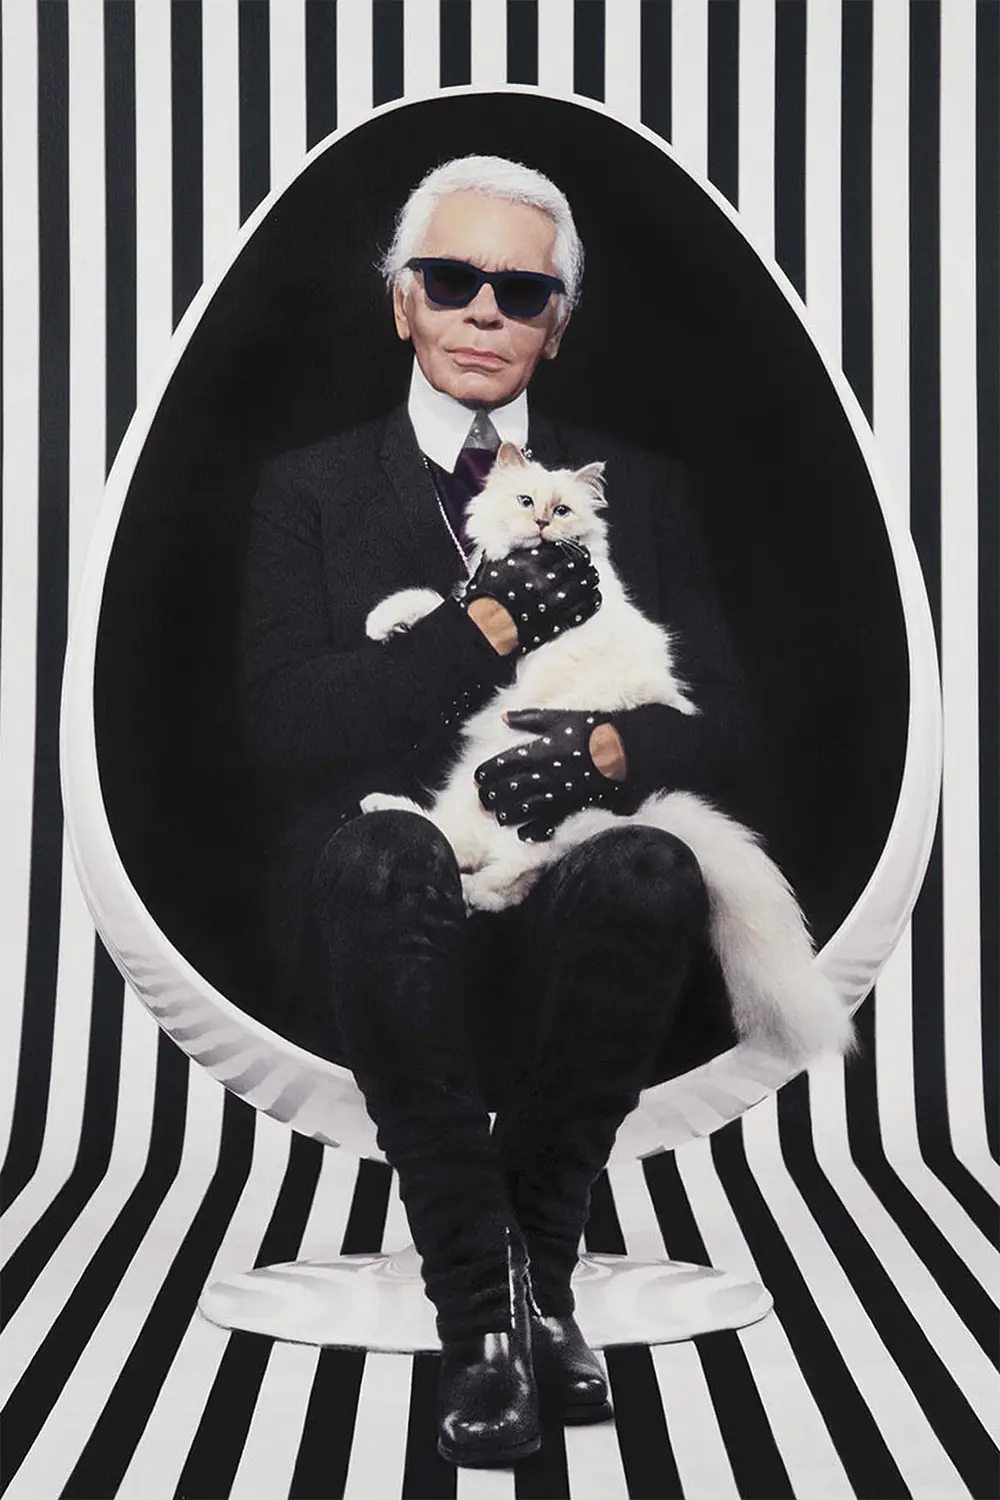 Imagem de conteúdo da notícia "Homenagem Karl Lagerfeld" #1